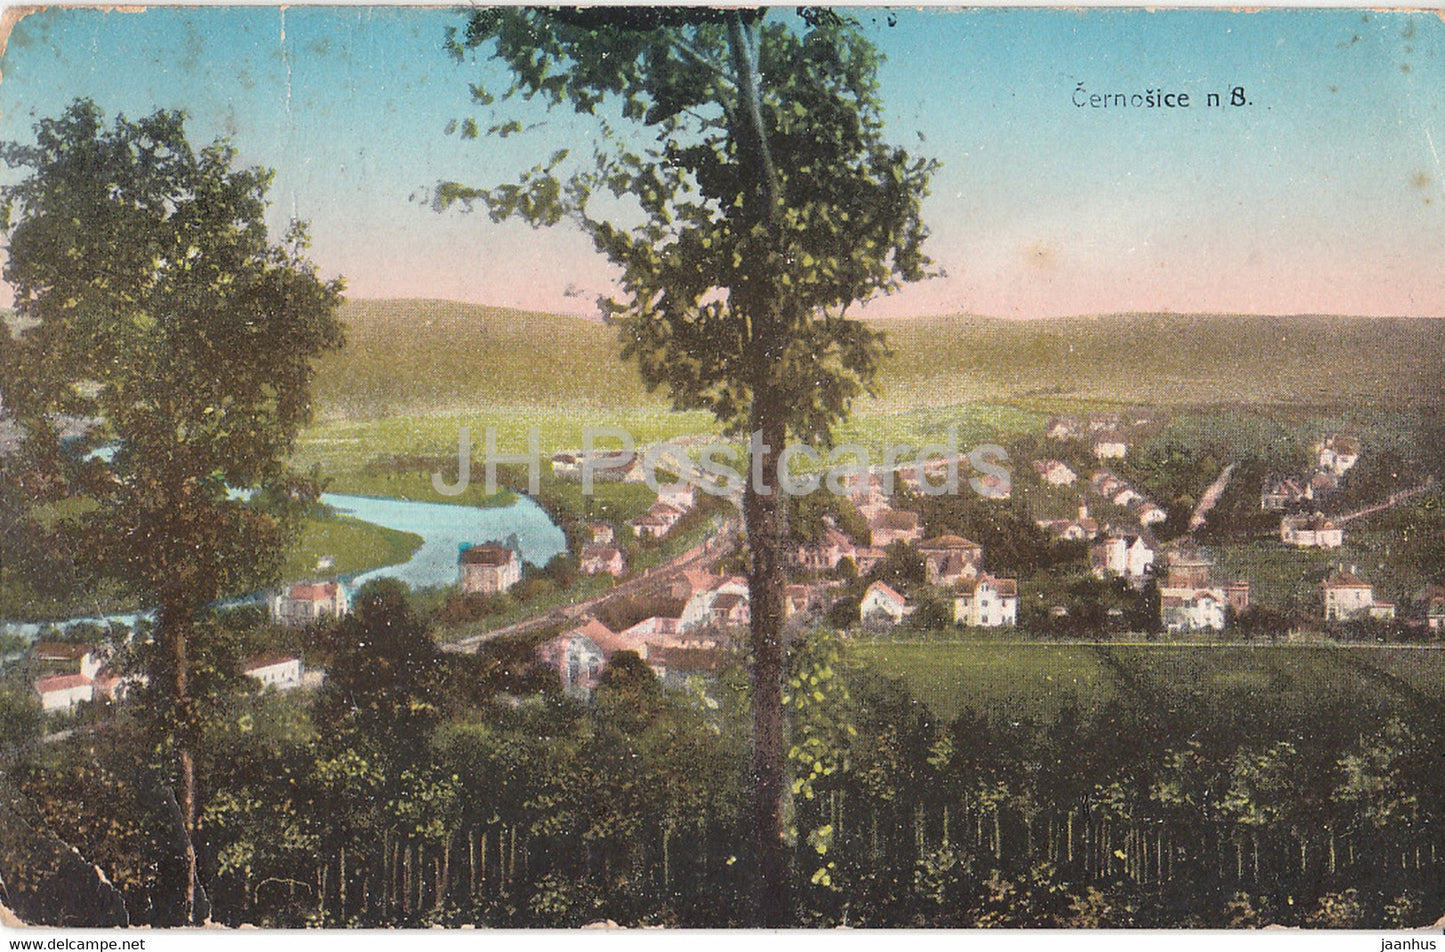 Cernosice - old postcard - Czech Republic - Czechoslovakia - used - JH Postcards